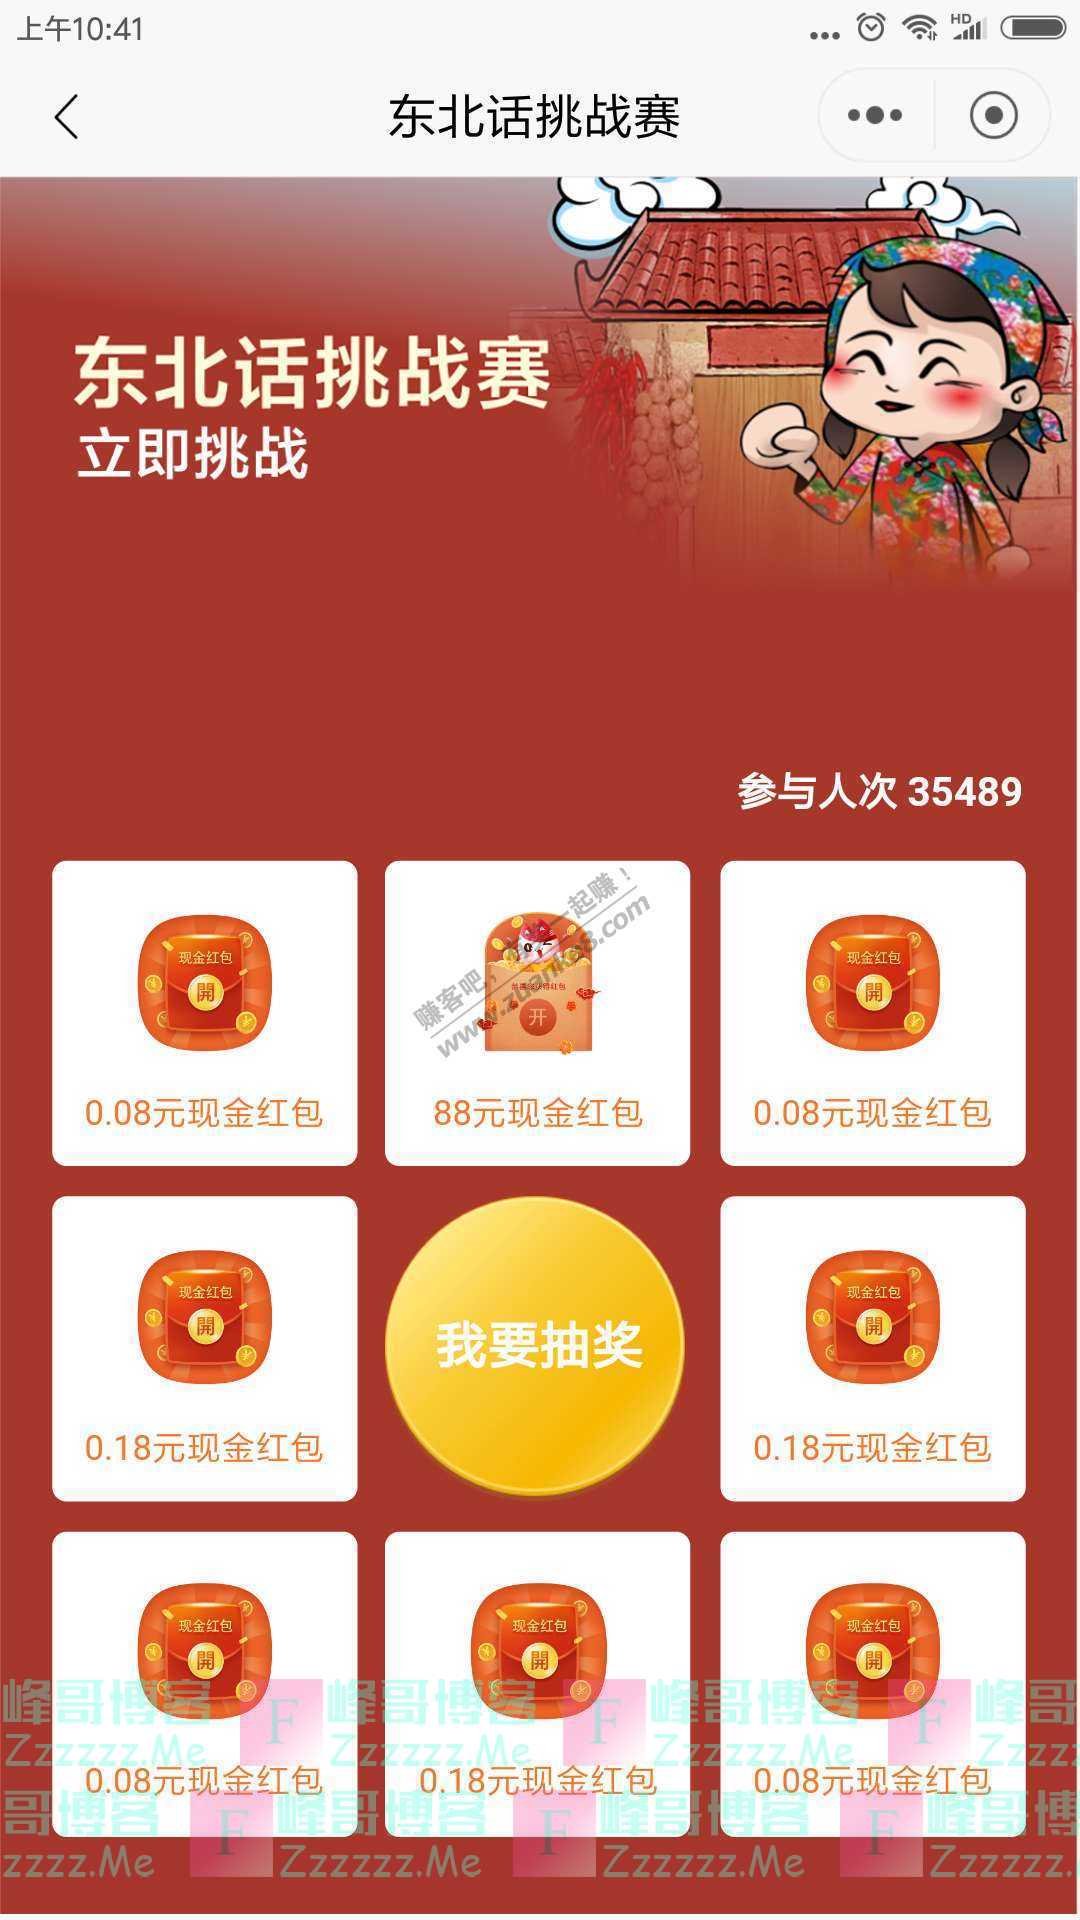 招商银行app东北话挑战赛（截止9月30日）